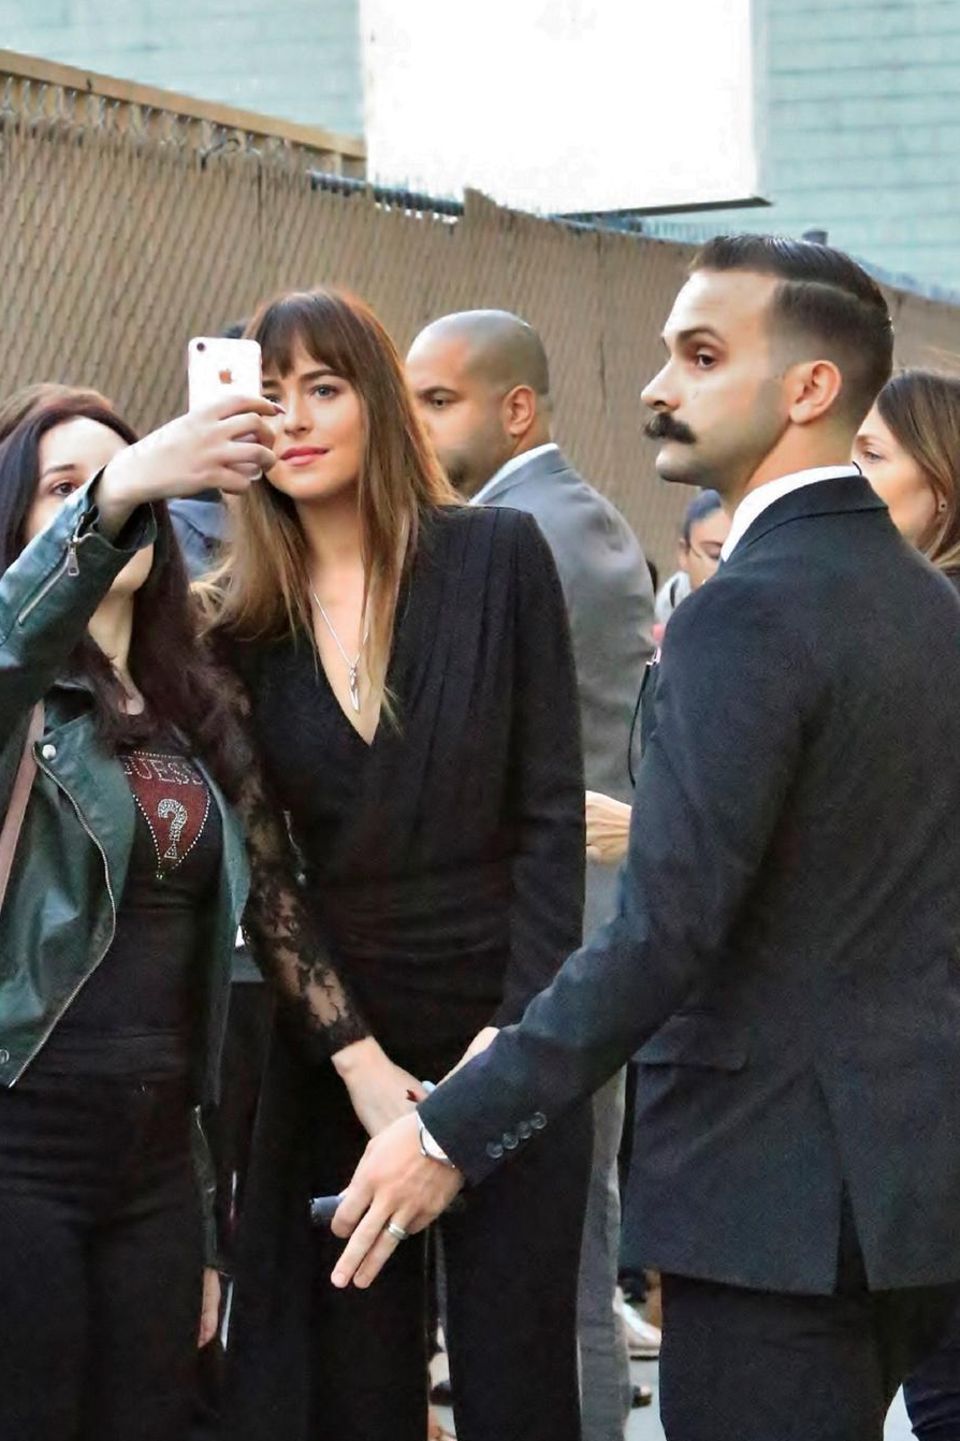 Beim Selfie-Knipsen mit den Fans zeigt sich Schauspielerin Dakota Johnson geduldig. Doch viel interessanter ist ihr Bodyguard, rechts im Bild. Attraktiv ist er ja, bis auf den buschigen Schnauzer ...